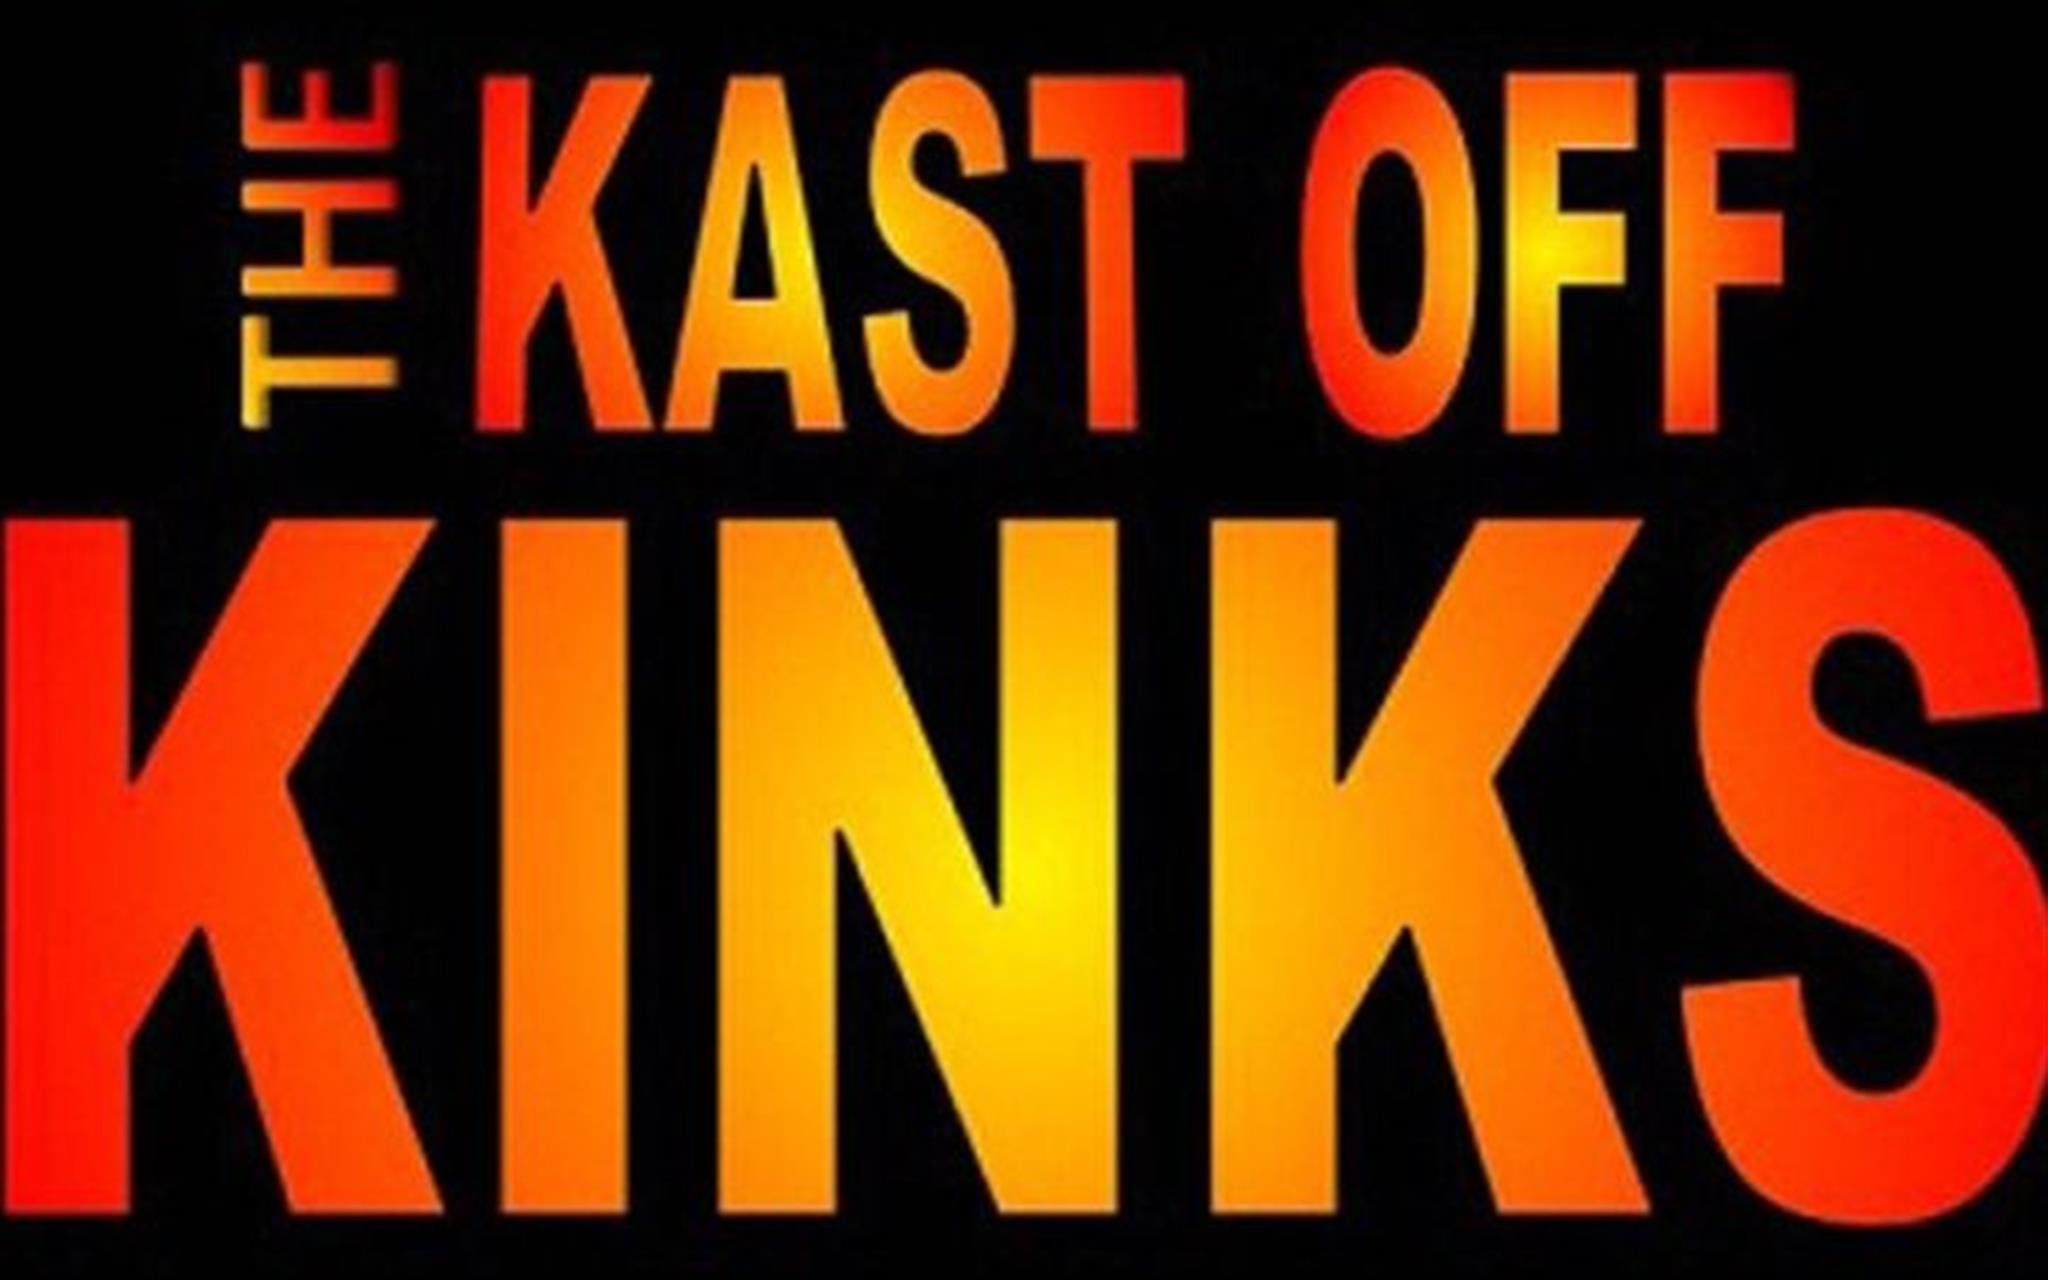 Kast Off Kinks image